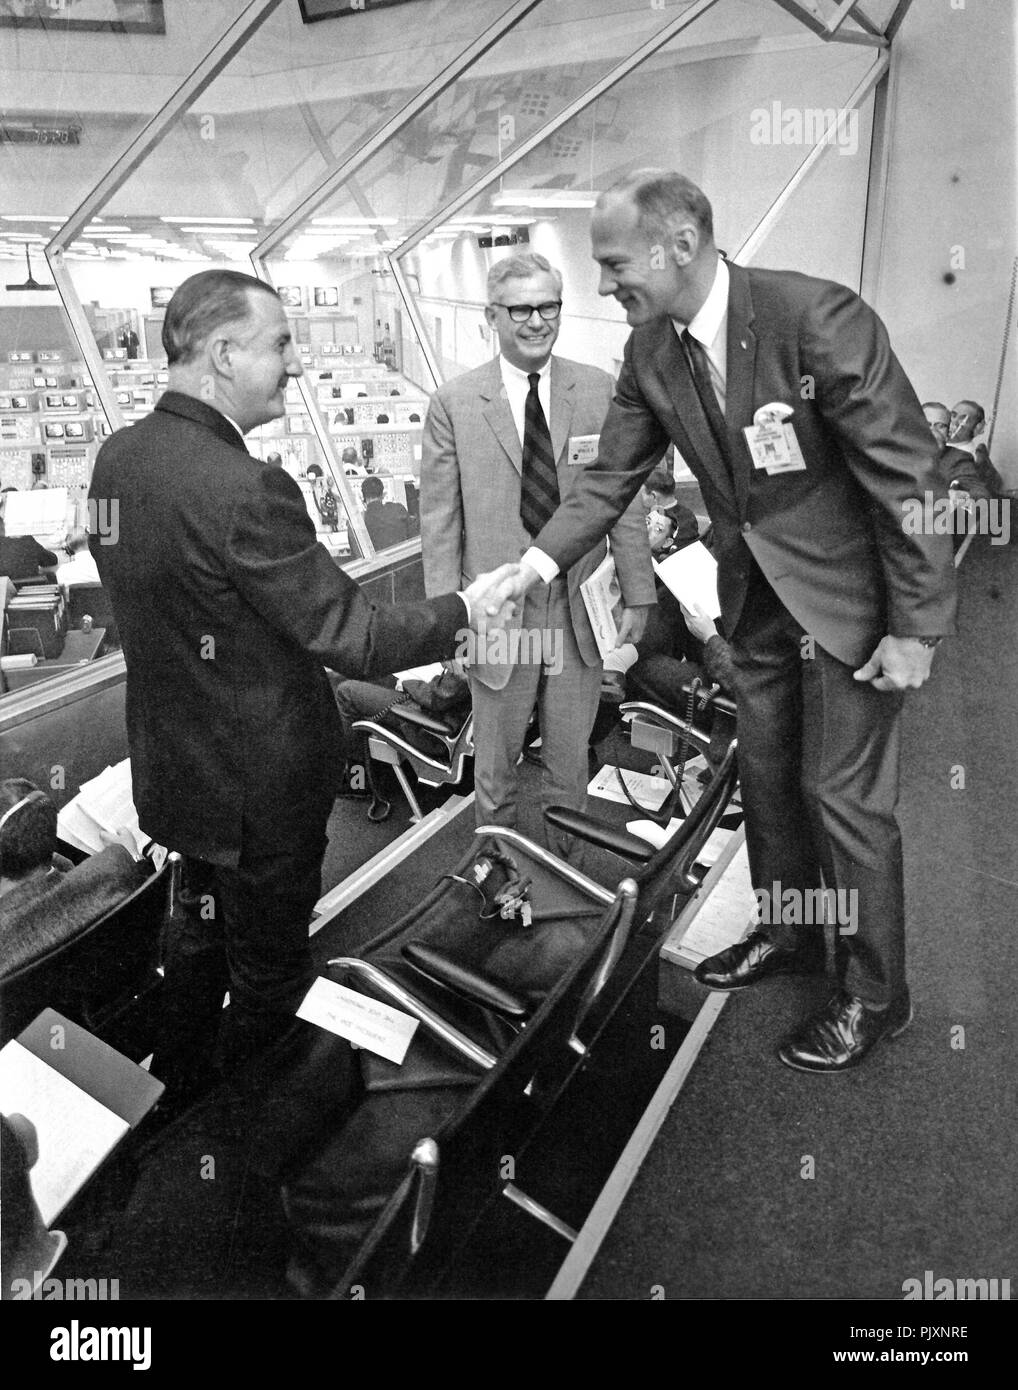 Cape Canaveral, FL - (Datei) - Apollo 11 Lunar Module (LM) pilot Edwin E." "Buzz" Aldrin, Jr., Recht, die Veröffentlichung einer Mondlandung von Neil A Armstrong (nicht abgebildet) grüsst Usa Vizepräsident Spiro Agnew, T., innerhalb des Spaceport Launch Control Center am 3. März 1969 Links zu machen. Auf zum Zentrum ist Dr. Robert Seamans, Sekretär der Air Force und ehemalige Nationale Luft- und Raumfahrtbehörde (NASA) Stellvertretender Administrator. Zuvor hatte die drei Männer gesehen den Start von Apollo 9. Credit: NASA über CNP/MediaPunch Stockfoto